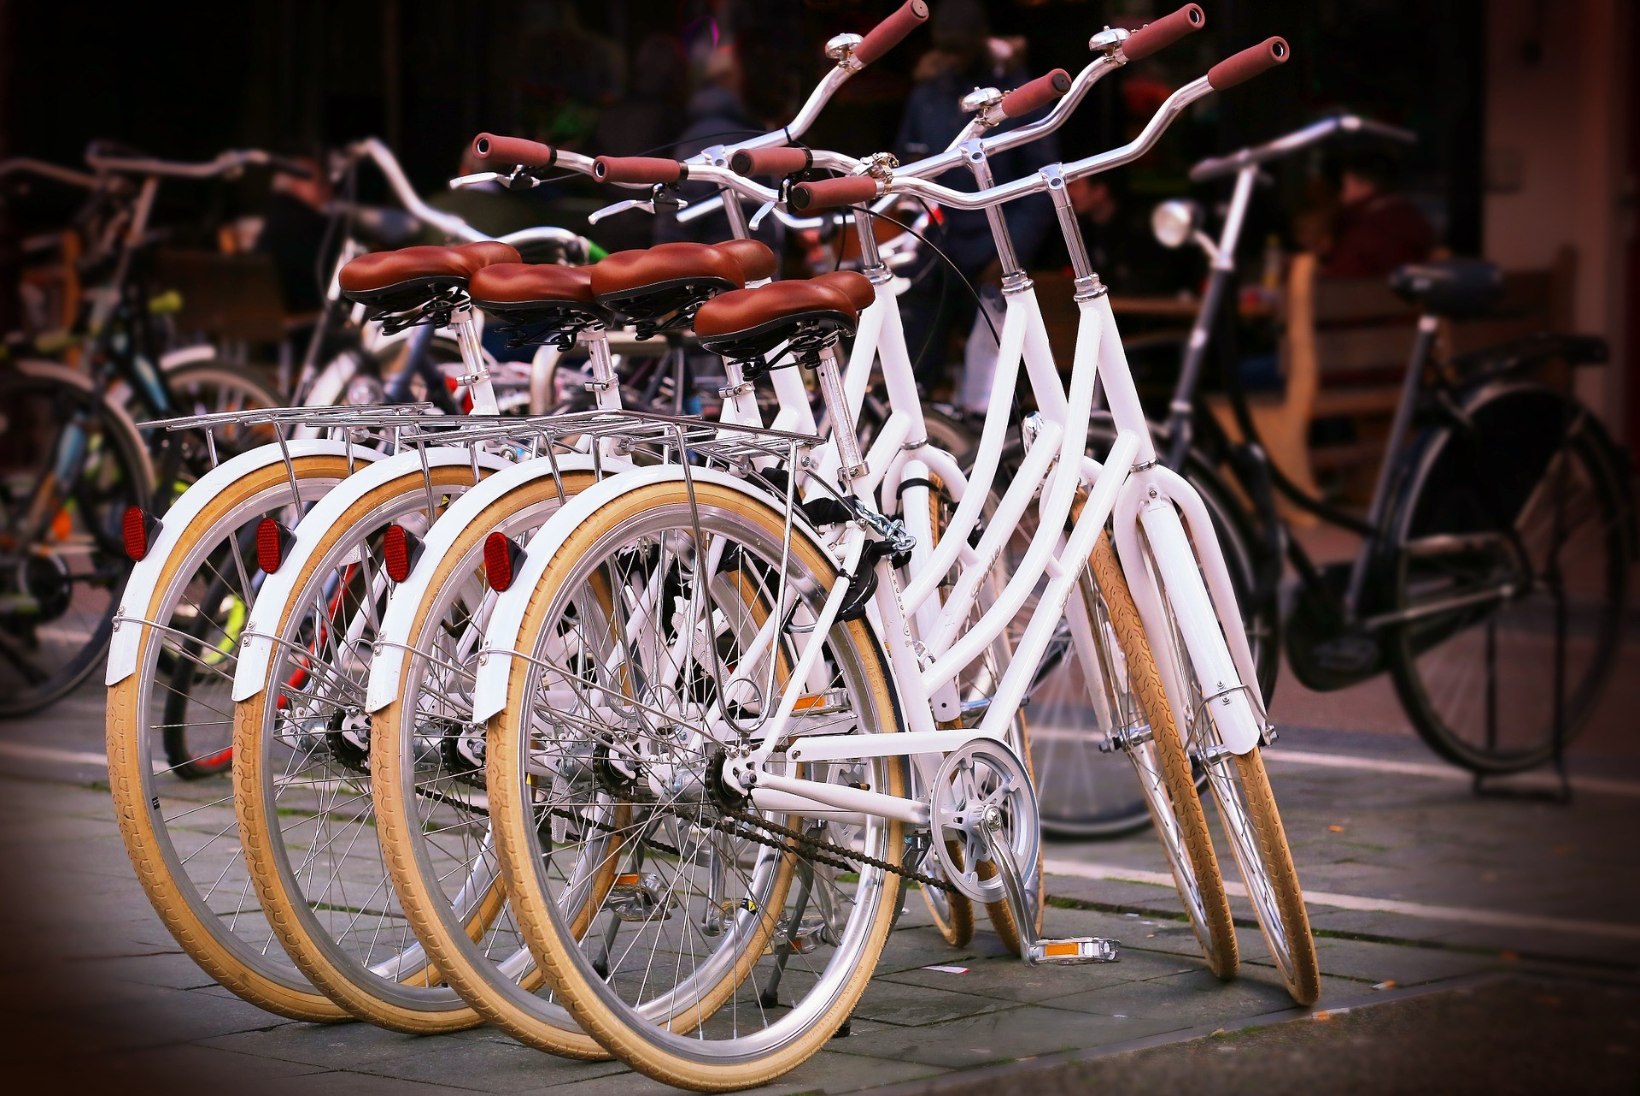 LISA PÄEVA REIPUST! 12 head põhjust, miks eelistada liiklusvahendina jalgratast